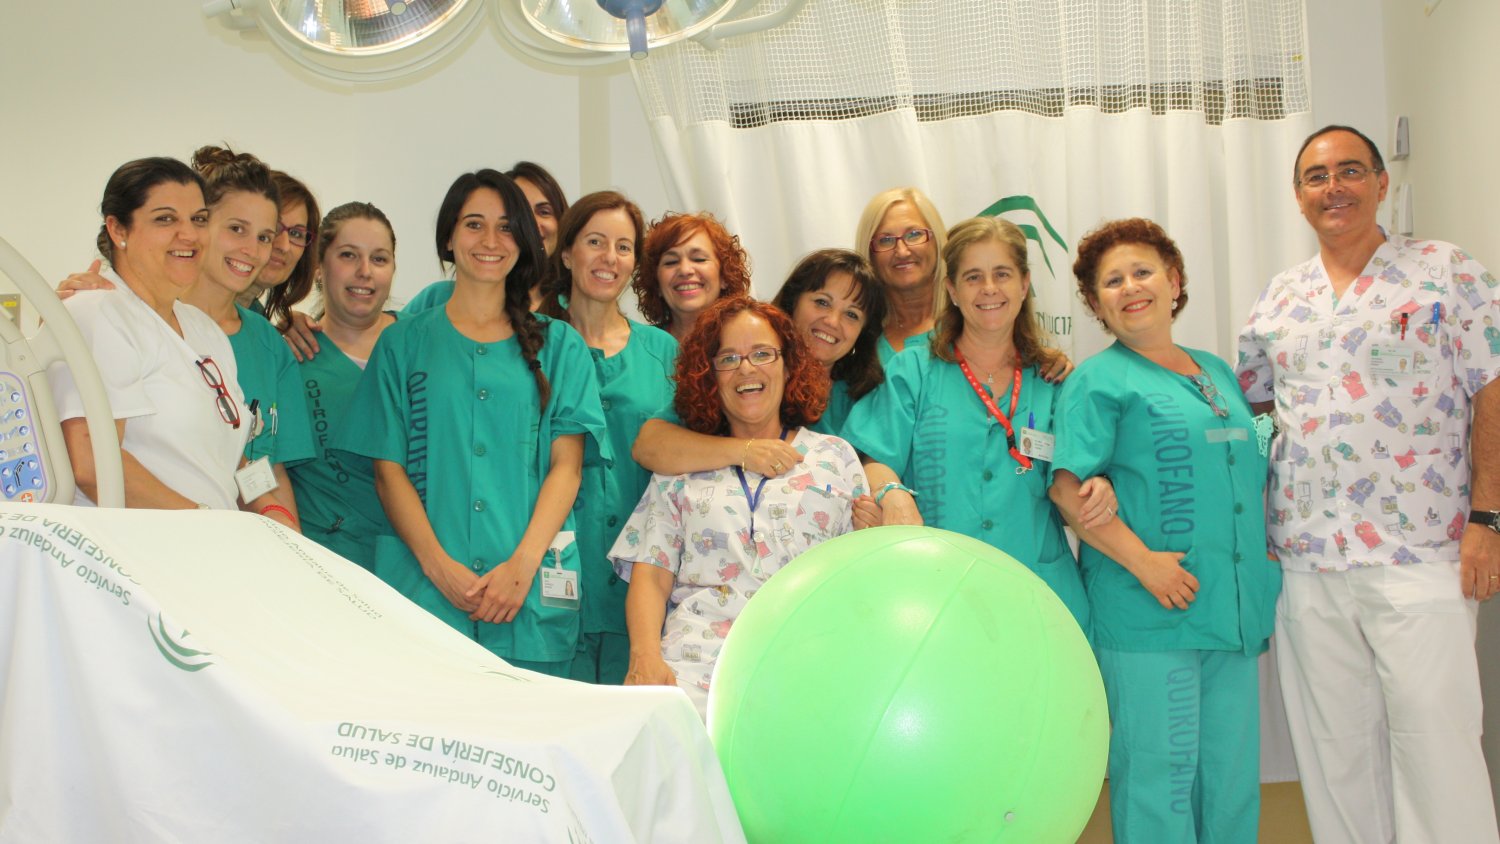 El Hospital Virgen de la Victoria se suma a los actos de celebración del Día Mundial de los Derechos del Nacimiento